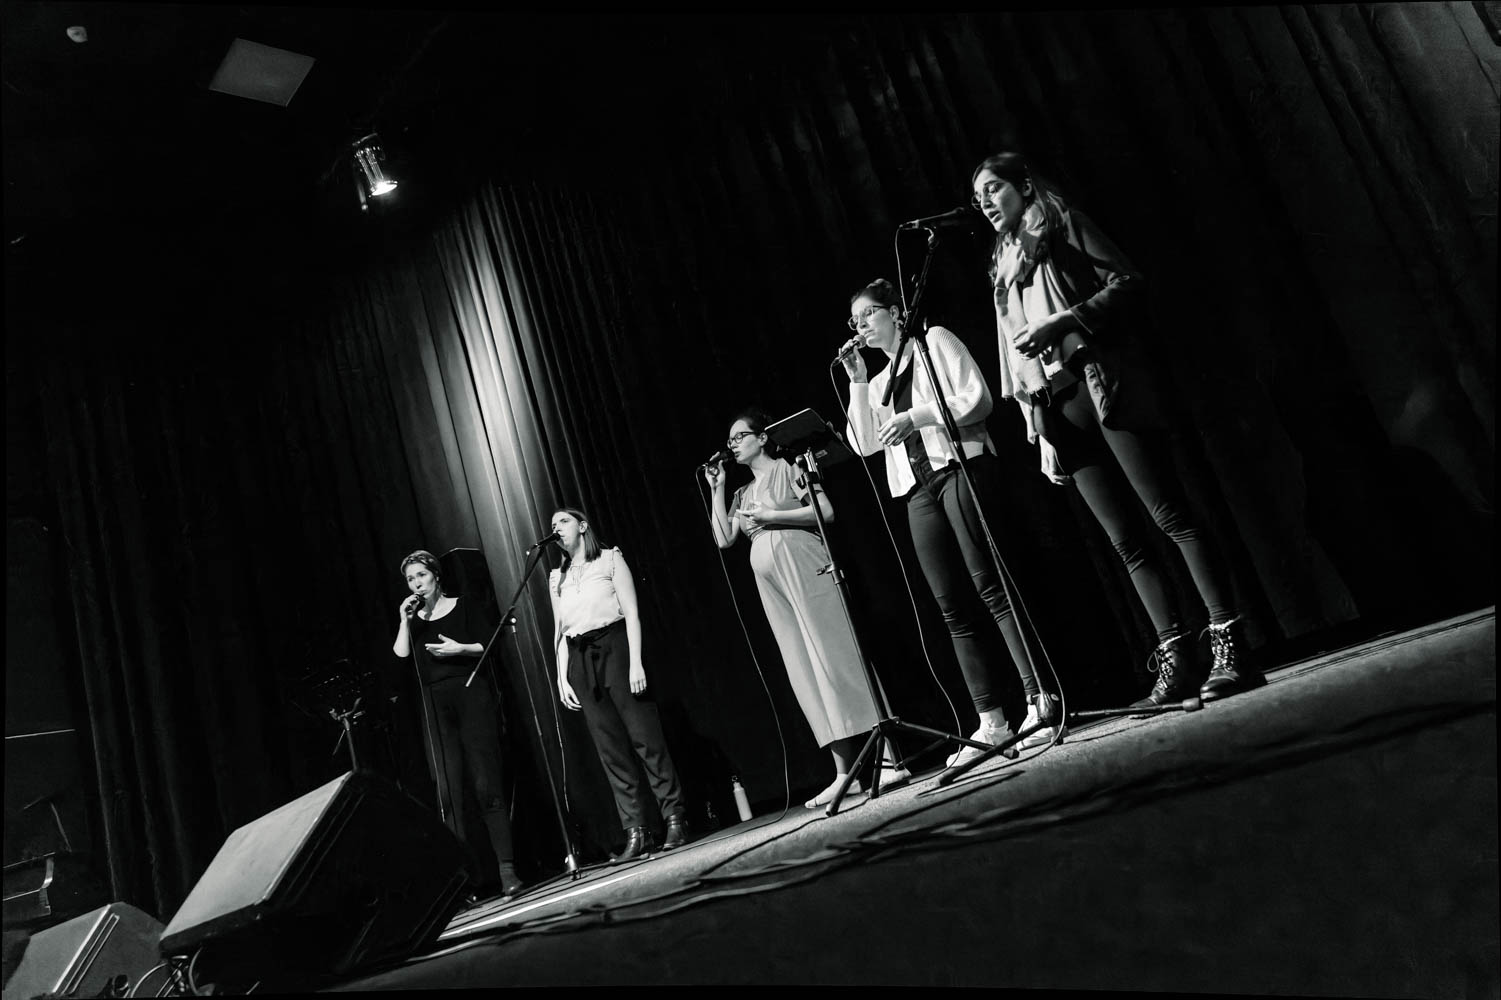 Bild mit Schwarzweißeffekt: Die A-cappella-Gruppe "mata" steht bei einem Auftritt auf der Bühne